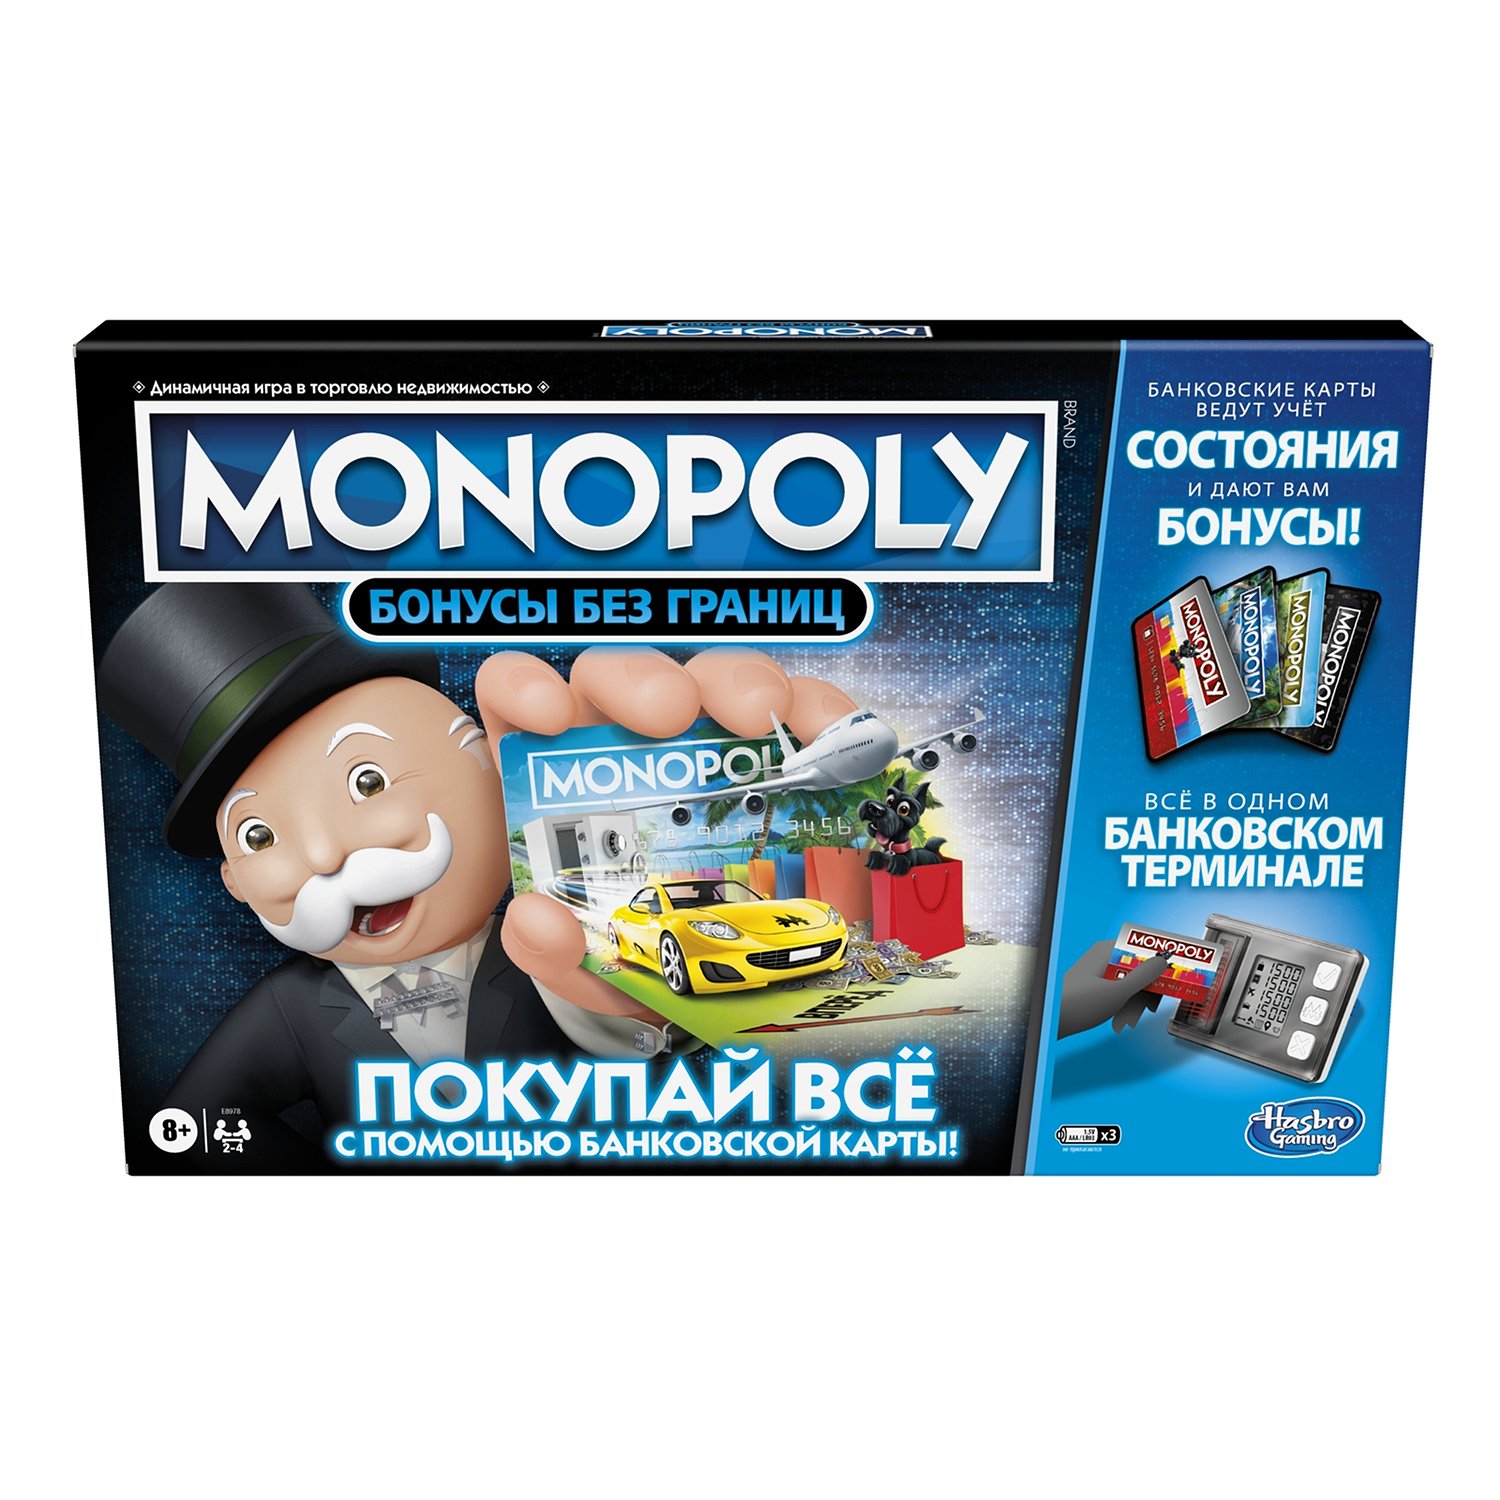 Monopoly       E8978